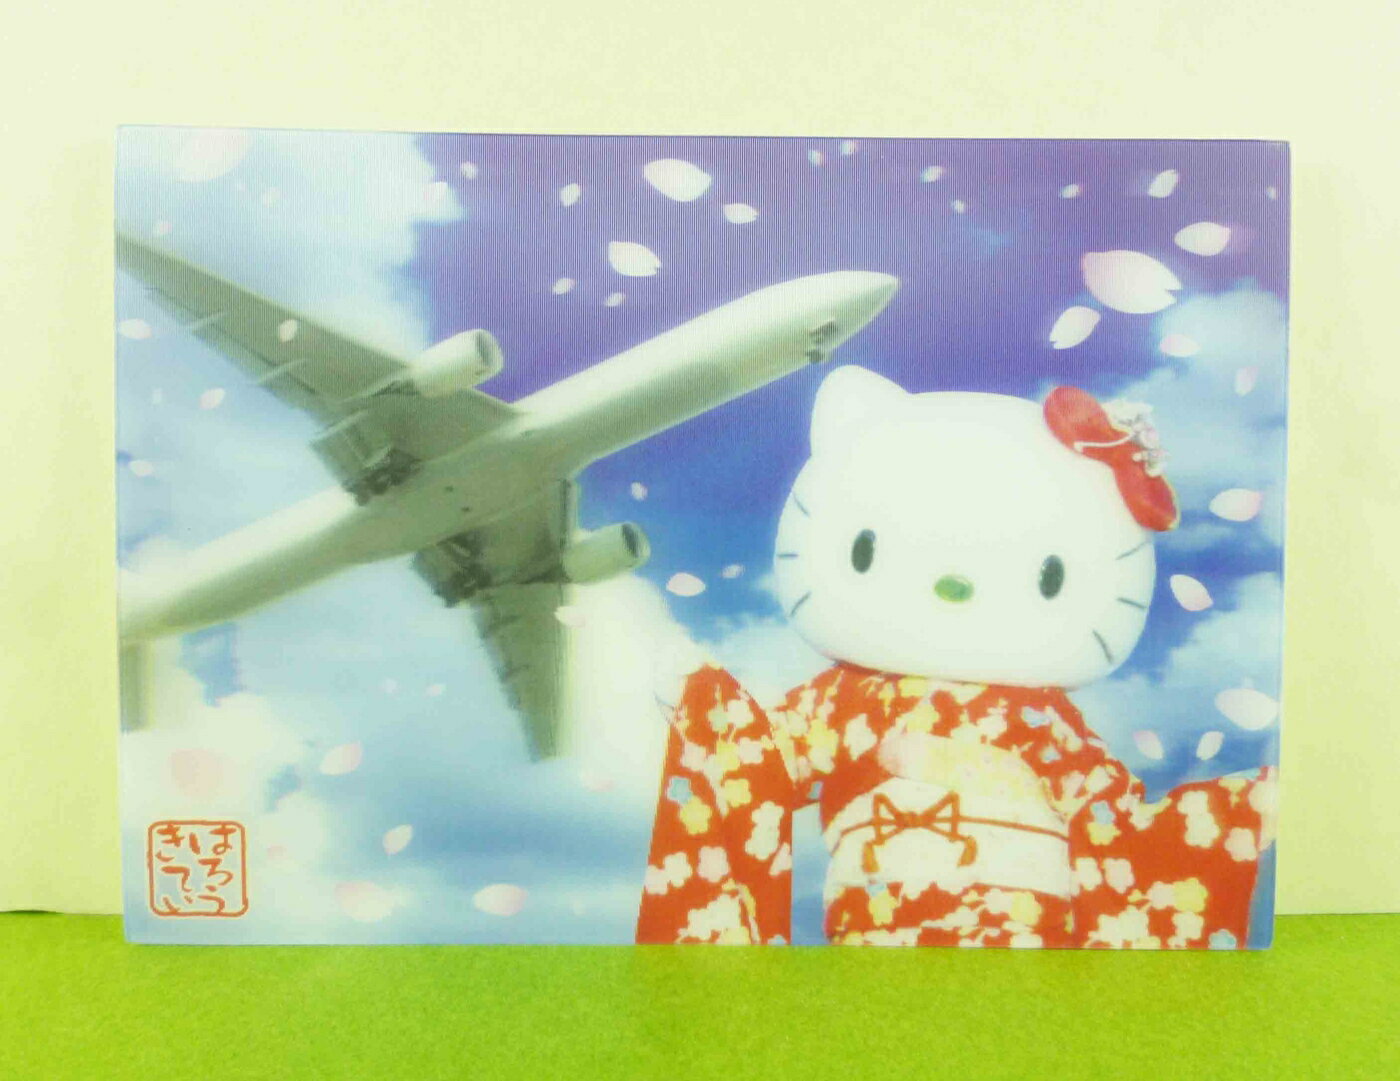 【震撼精品百貨】Hello Kitty 凱蒂貓 明信片-飛機 震撼日式精品百貨